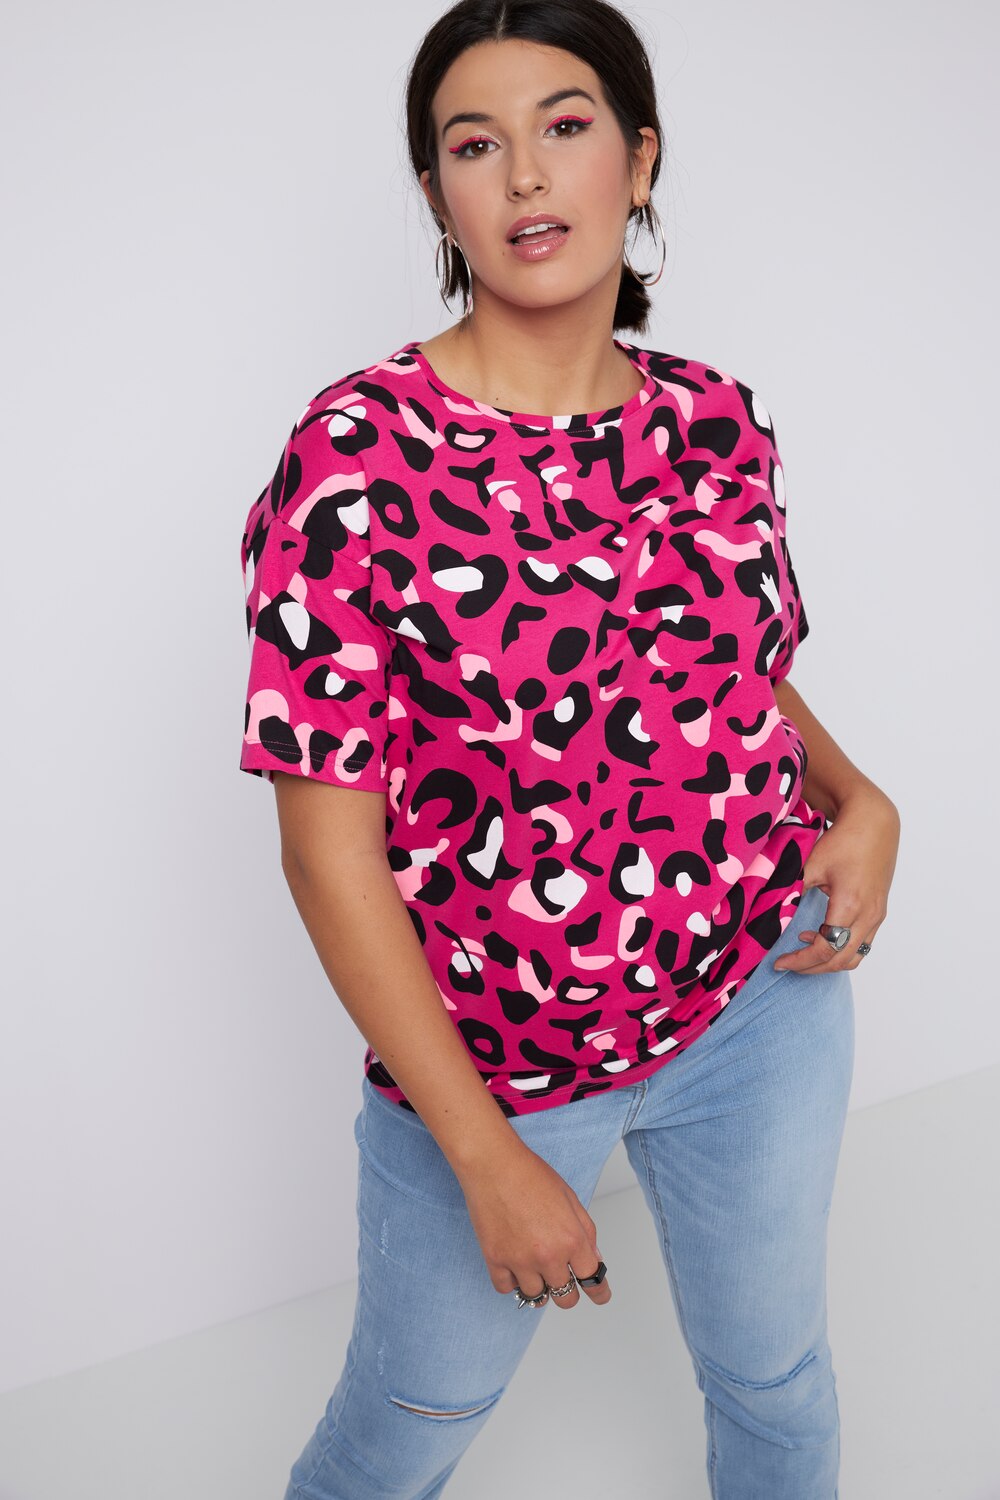 Grote Maten T-shirt, Dames, roze, Maat: 54/56, Katoen, Studio Untold